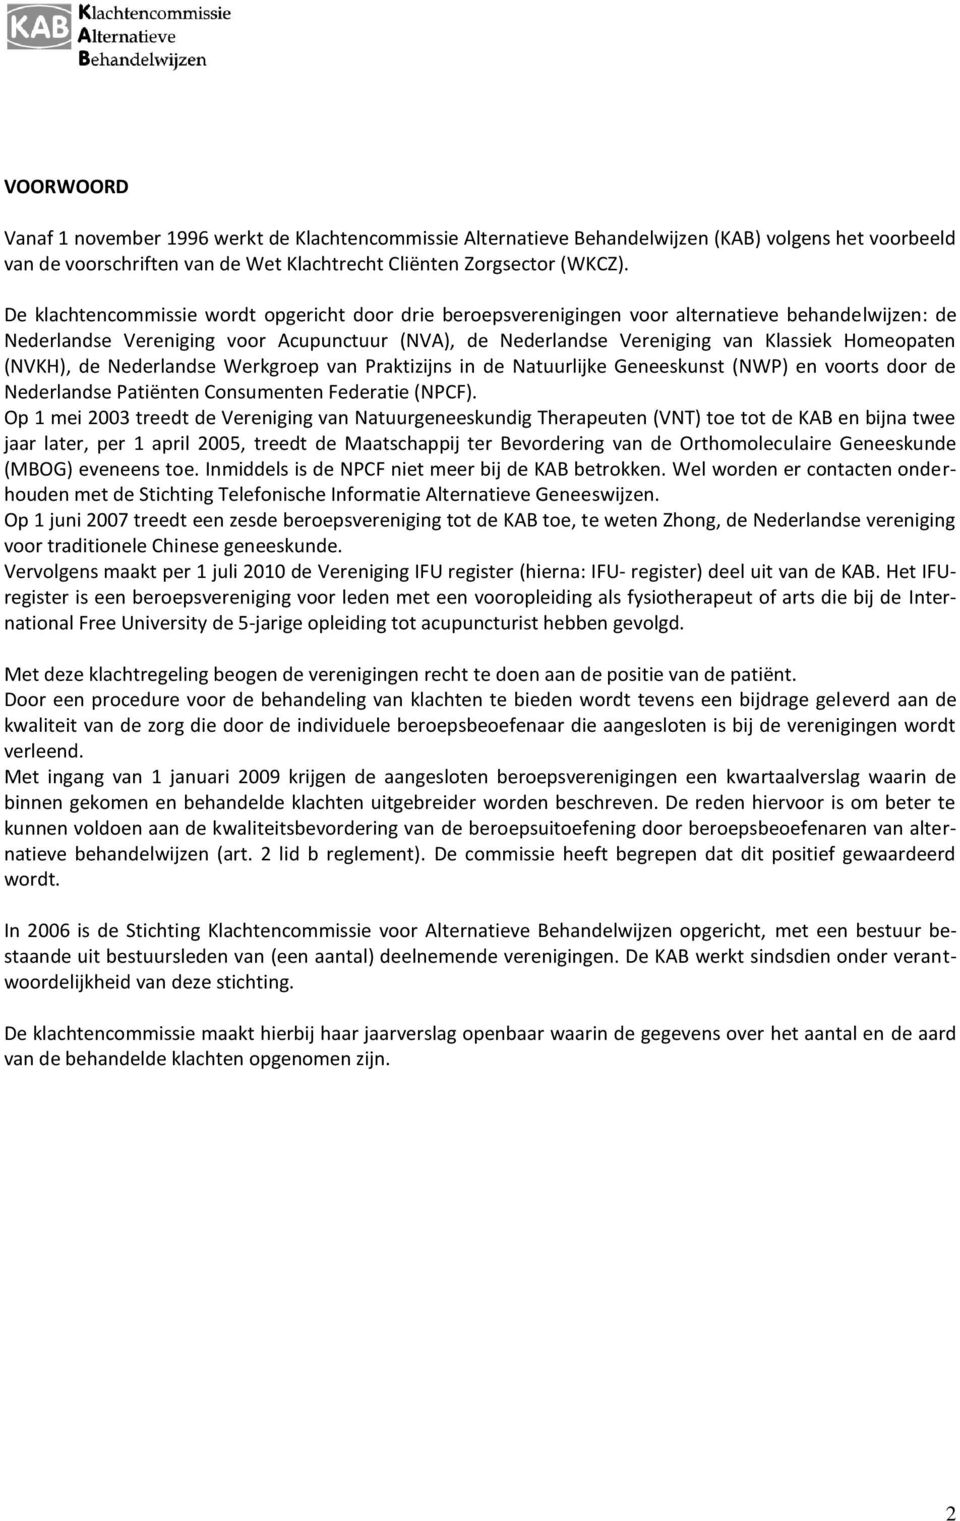 Homeopaten (NVKH), de Nederlandse Werkgroep van Praktizijns in de Natuurlijke Geneeskunst (NWP) en voorts door de Nederlandse Patiënten Consumenten Federatie (NPCF).